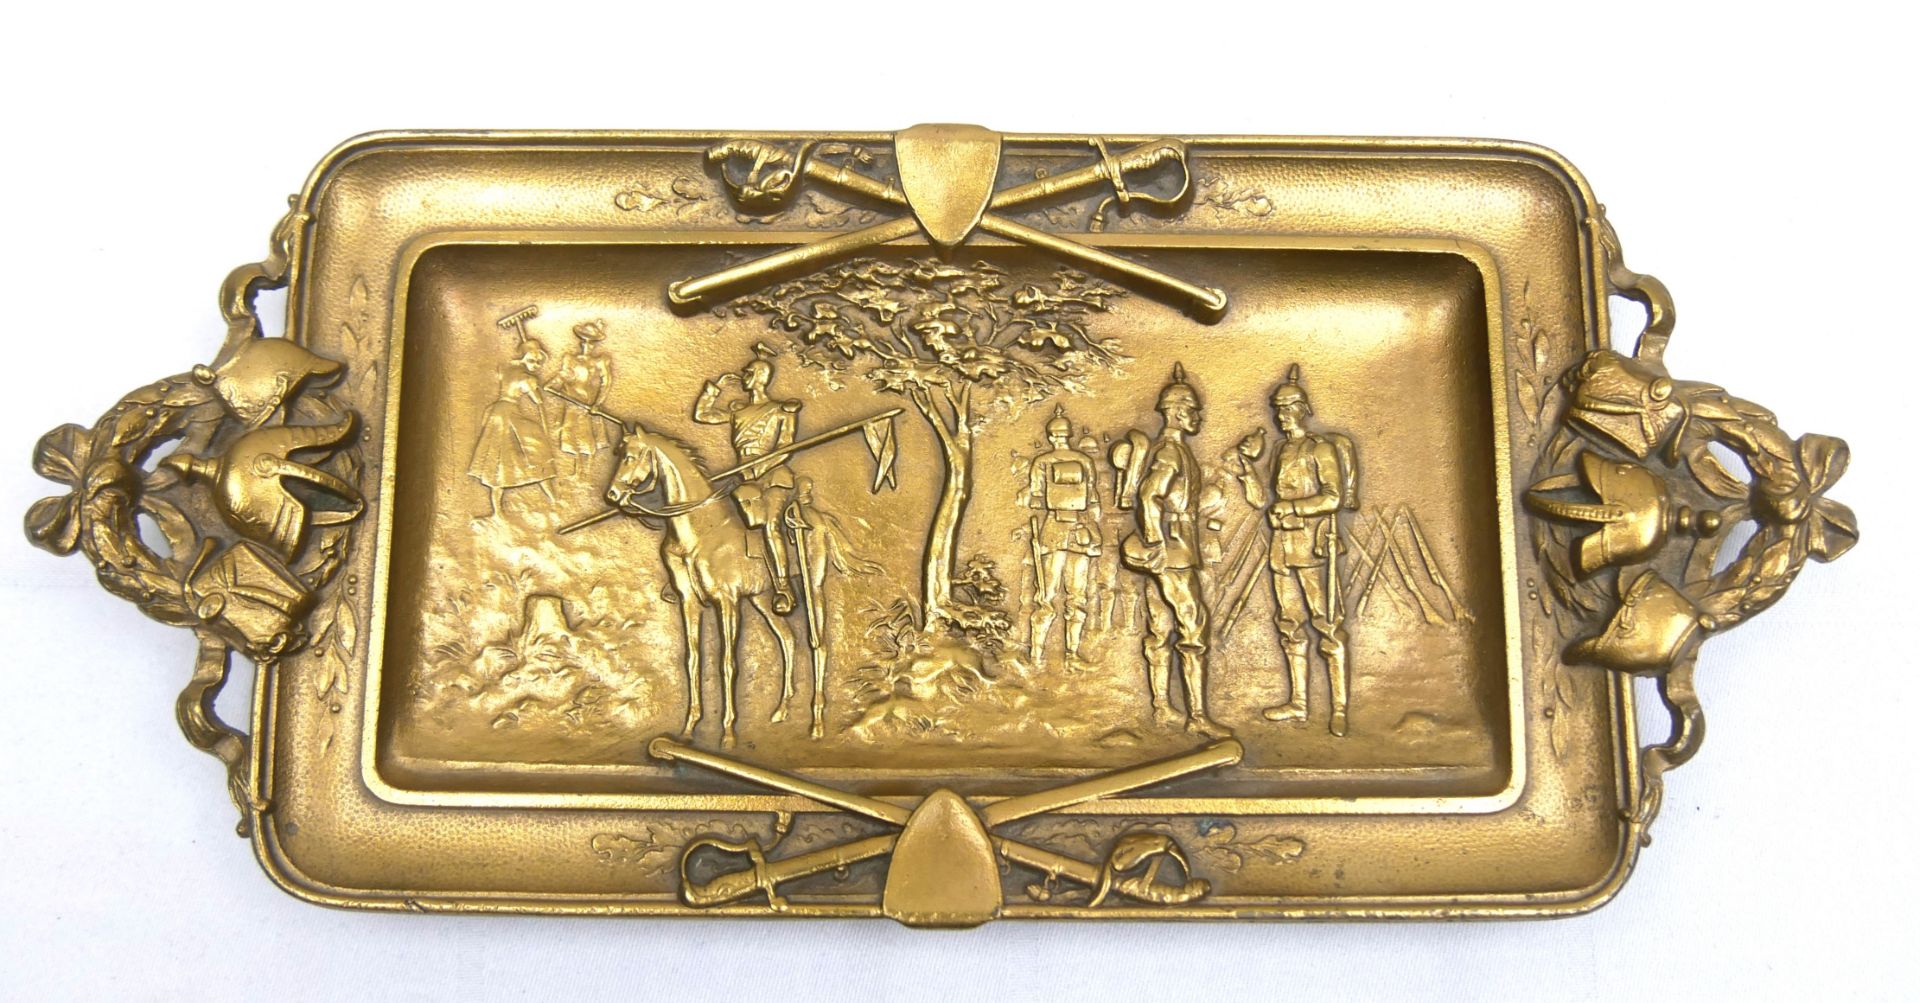 Französisches Tablett oder Vide-Poche aus Bronze mit Soldatenszene. Gekreuzten Schwertern, links und